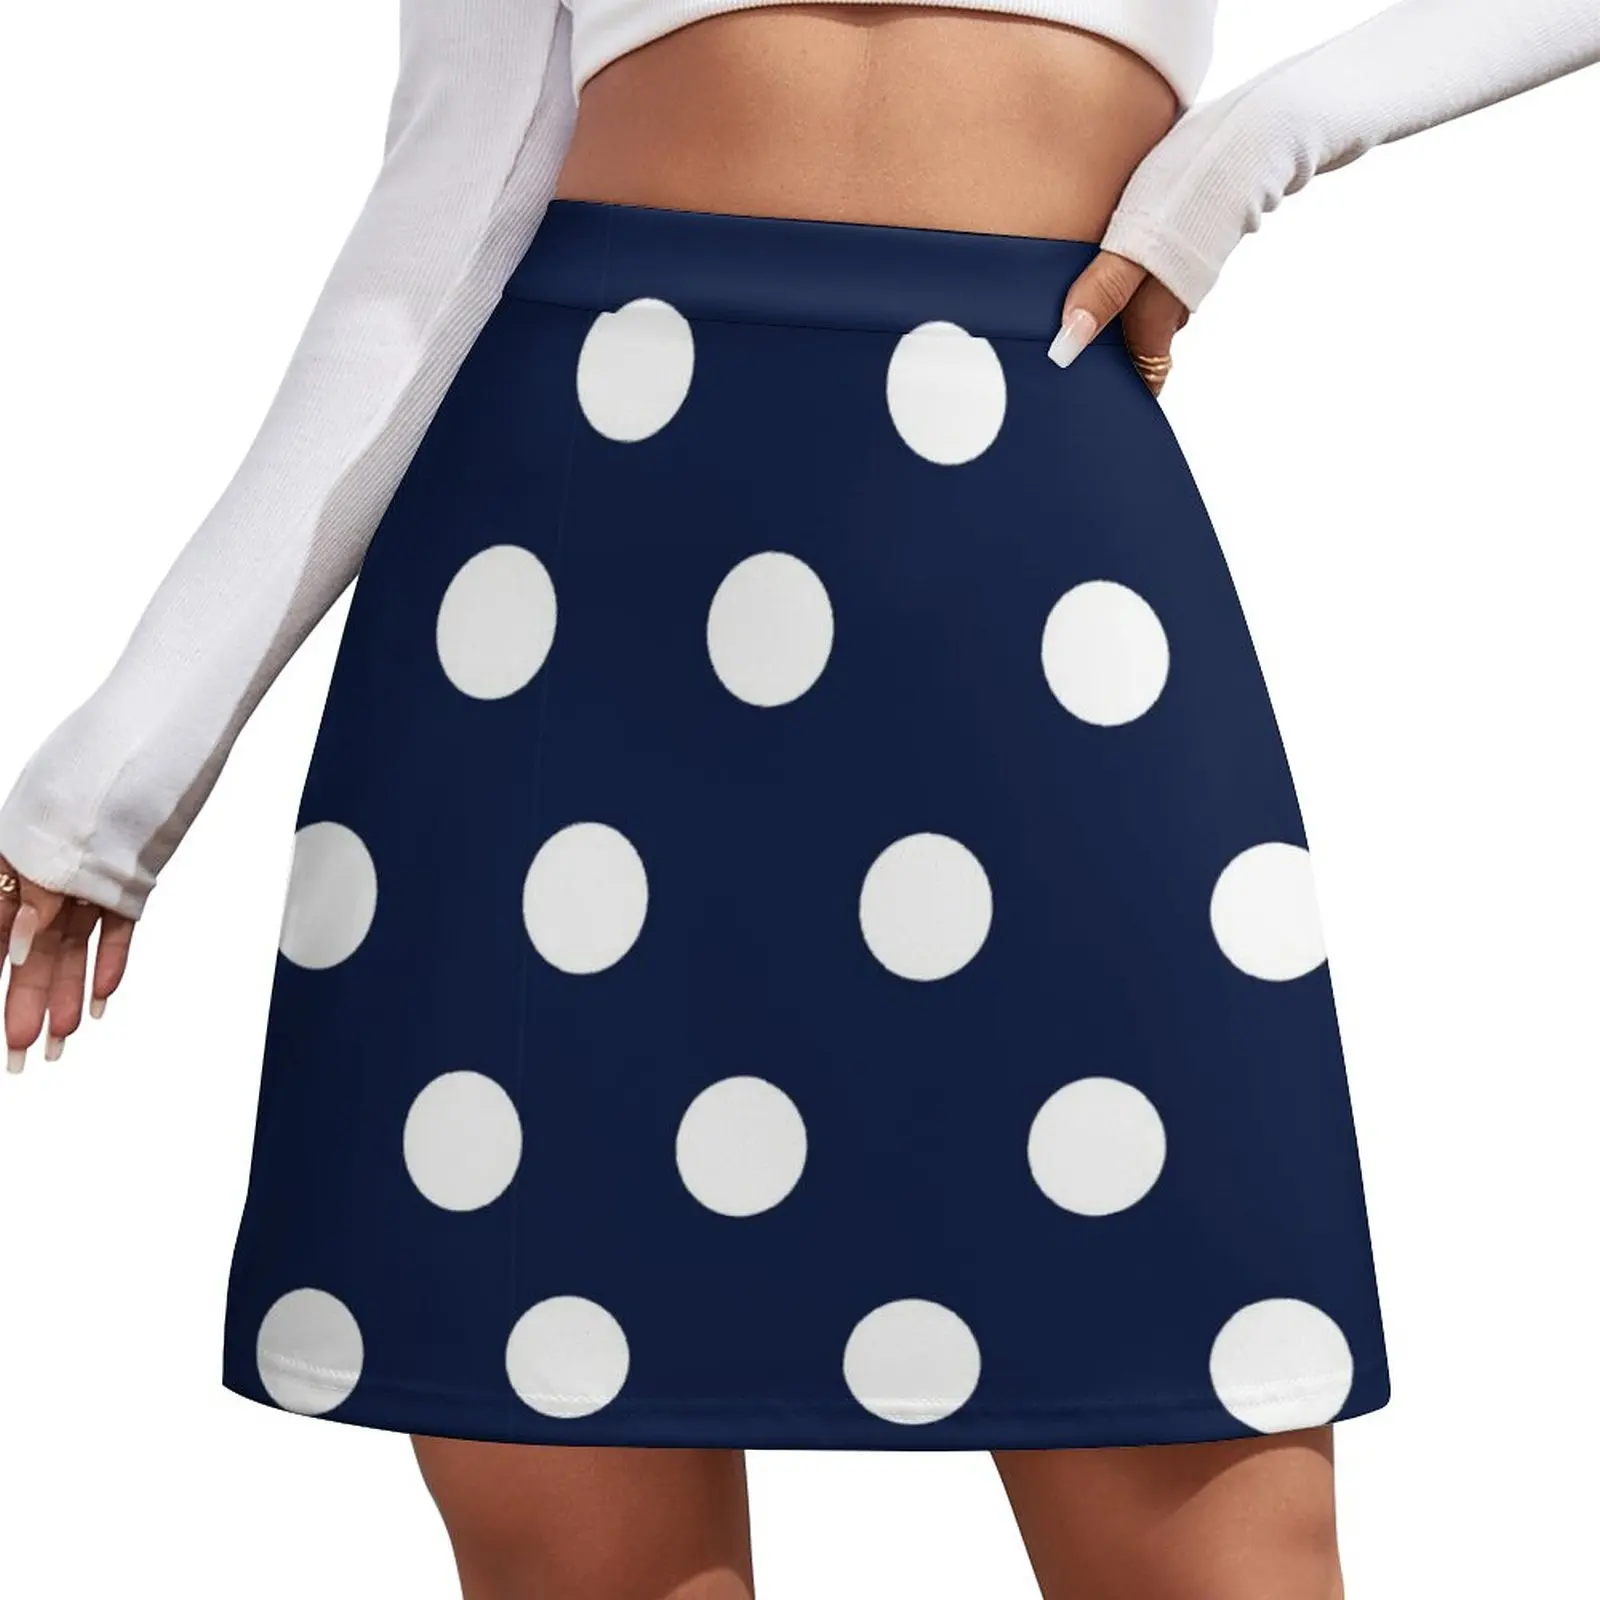 Navy Blue and White Large Polka Dot Mini Skirt Women's skirt Short women′s skirts